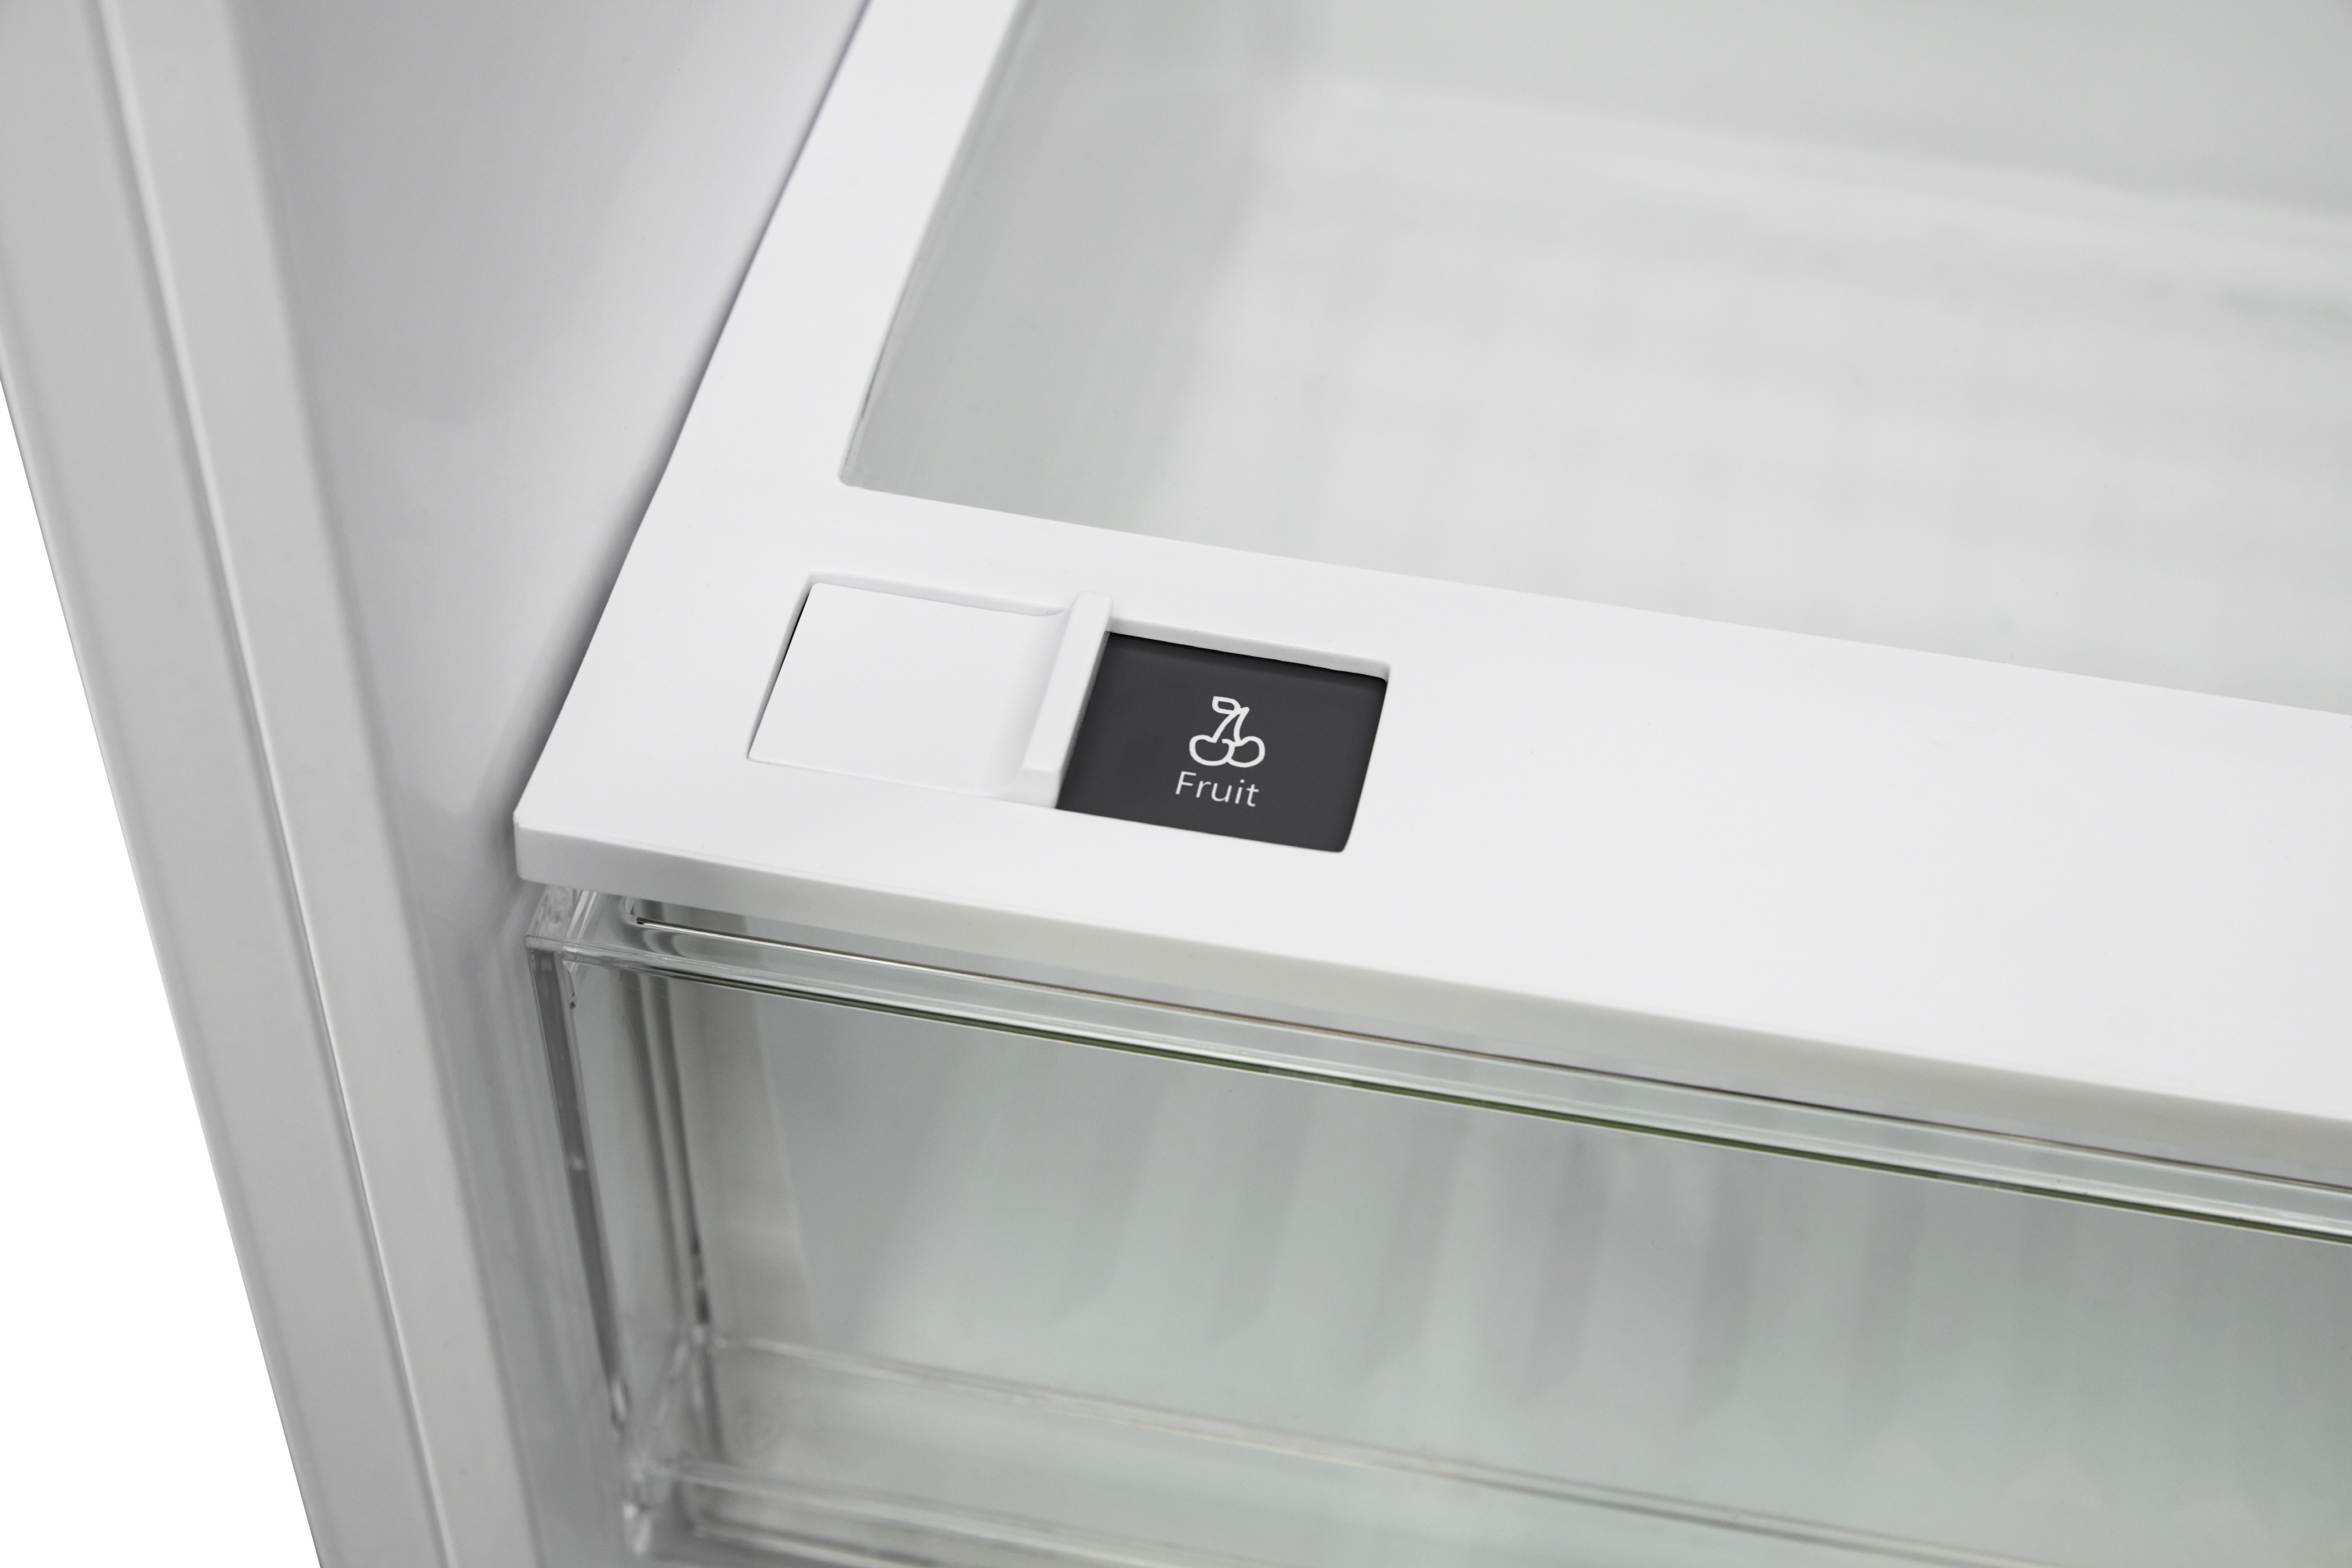 [RFGB2491] SK매직 빌트인 양문형 콤비 냉장고 (좌열림형/우열림형) / 무료설치